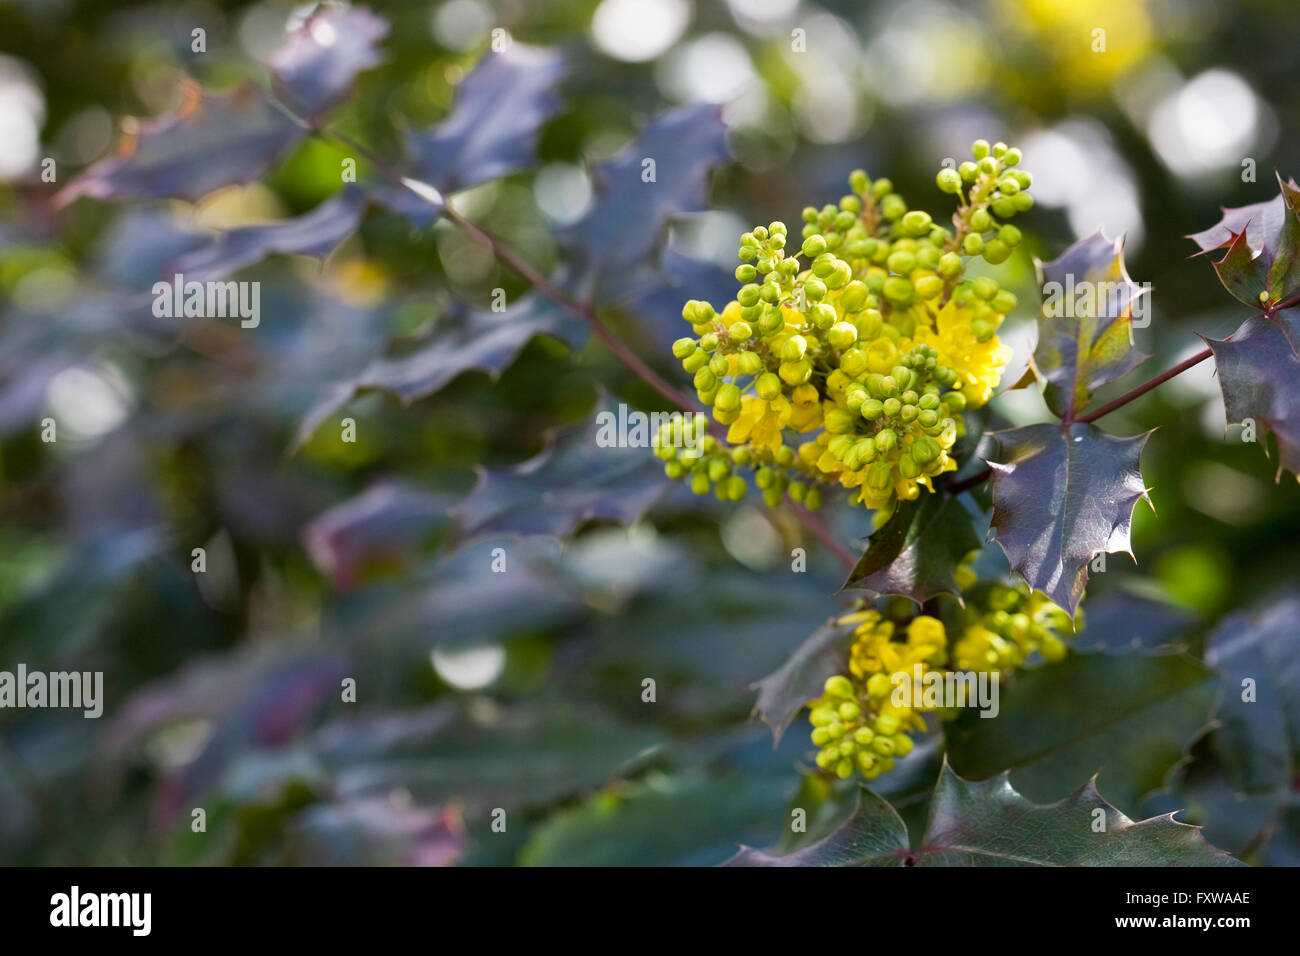 Mahonia x wagneri 'Undulata' flowers. Stock Photo